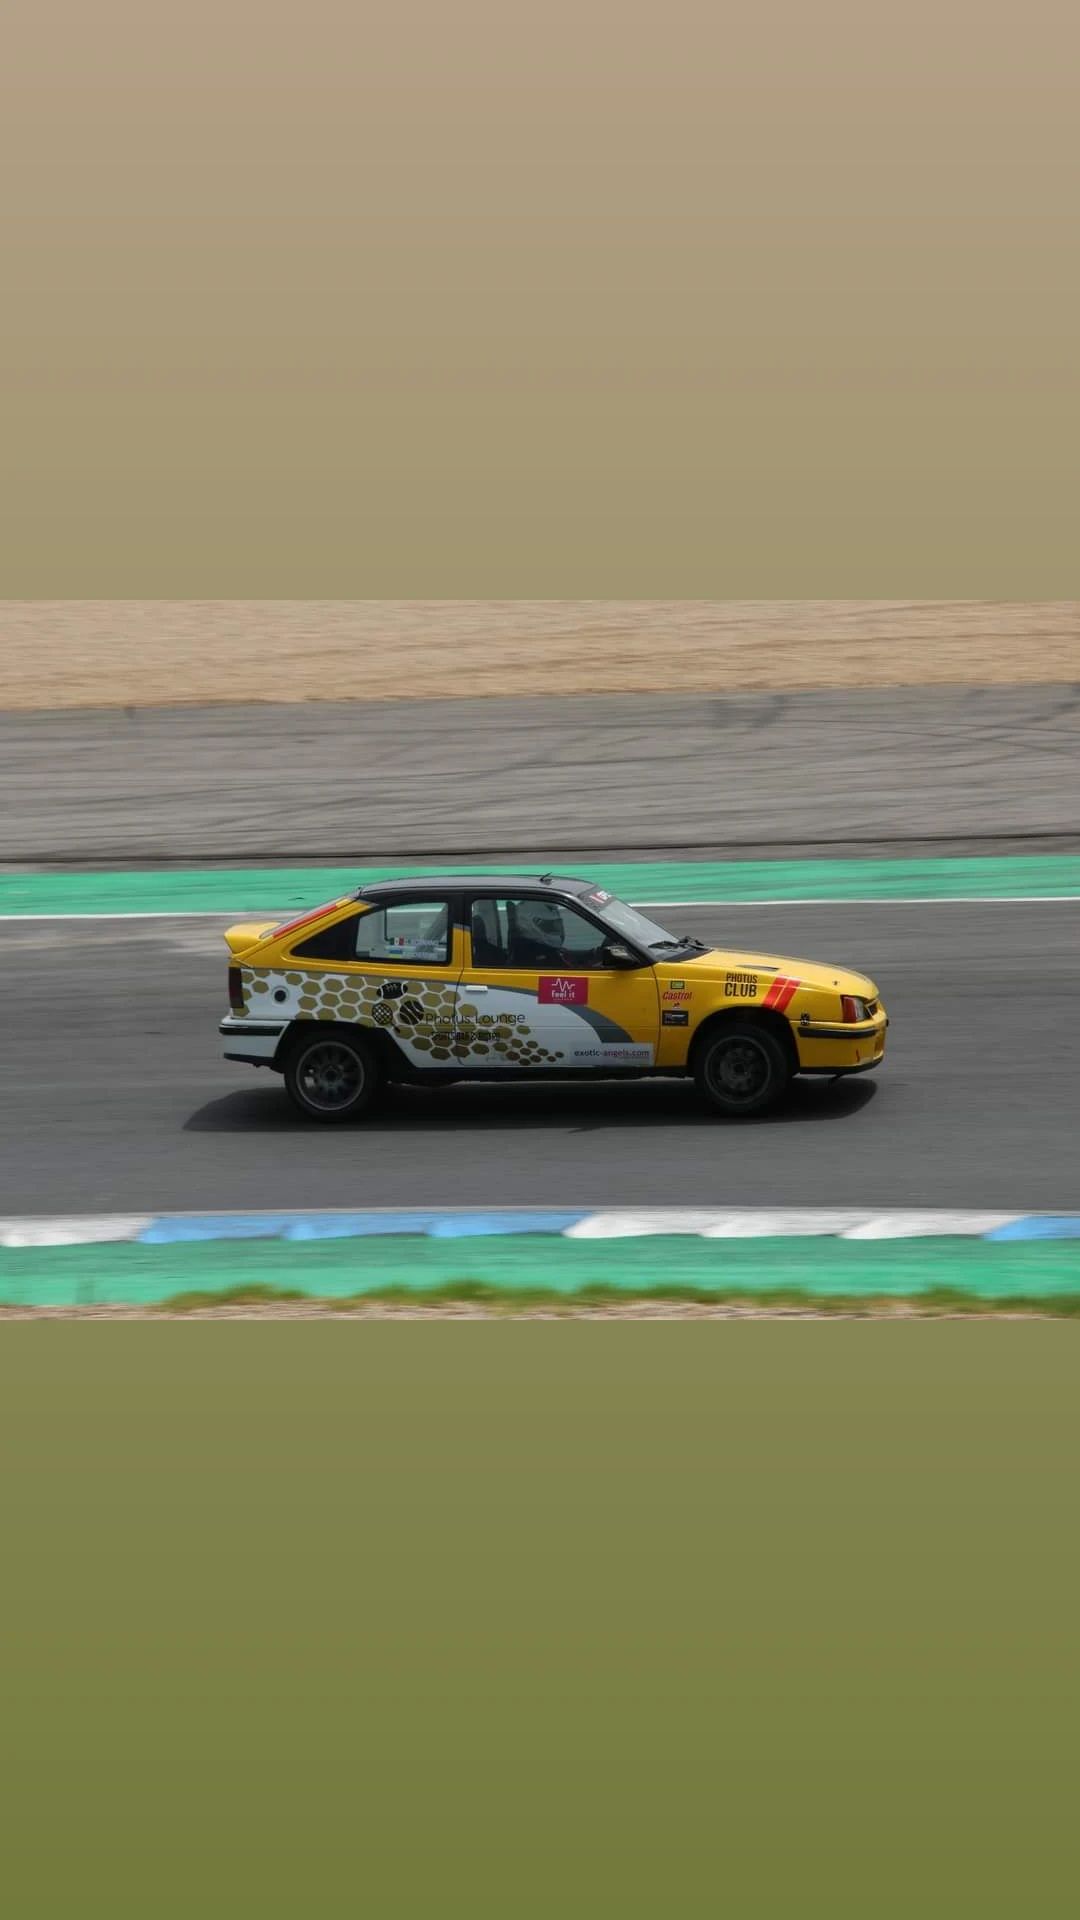 Opel Kadett GSI 2.0 para competição de velocidade e rally